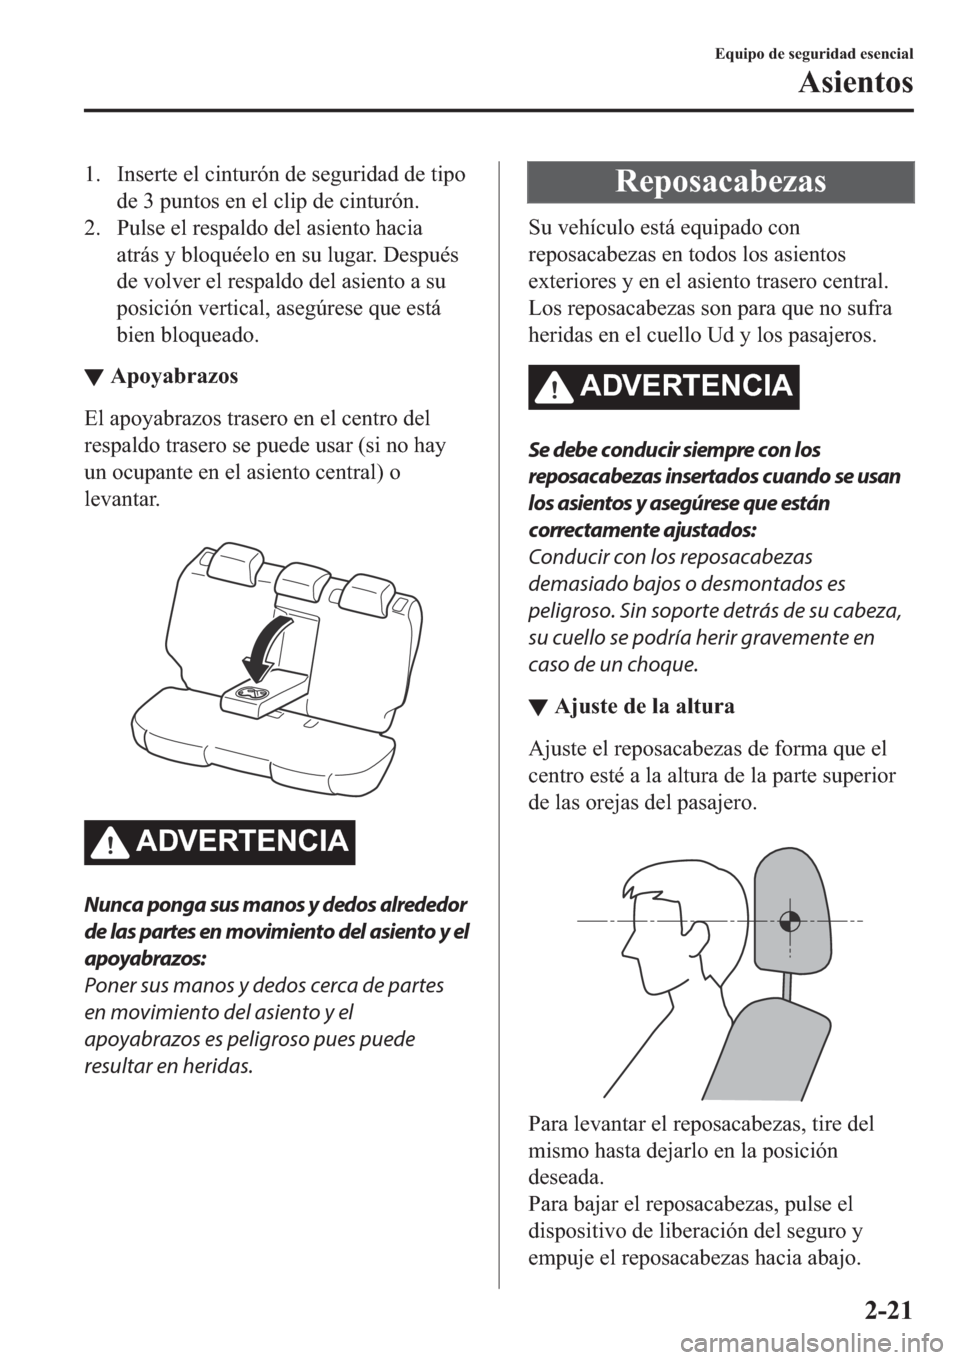 MAZDA MODEL 6 2019  Manual del propietario (in Spanish) �� �,�Q�V�H�U�W�H��H�O��F�L�Q�W�X�U�y�Q��G�H��V�H�J�X�U�L�G�D�G��G�H��W�L�S�R
�G�H����S�X�Q�W�R�V��H�Q��H�O��F�O�L�S��G�H��F�L�Q�W�X�U�y�Q�
�� �3�X�O�V�H��H�O��U�H�V�S�D�O�G�R��G